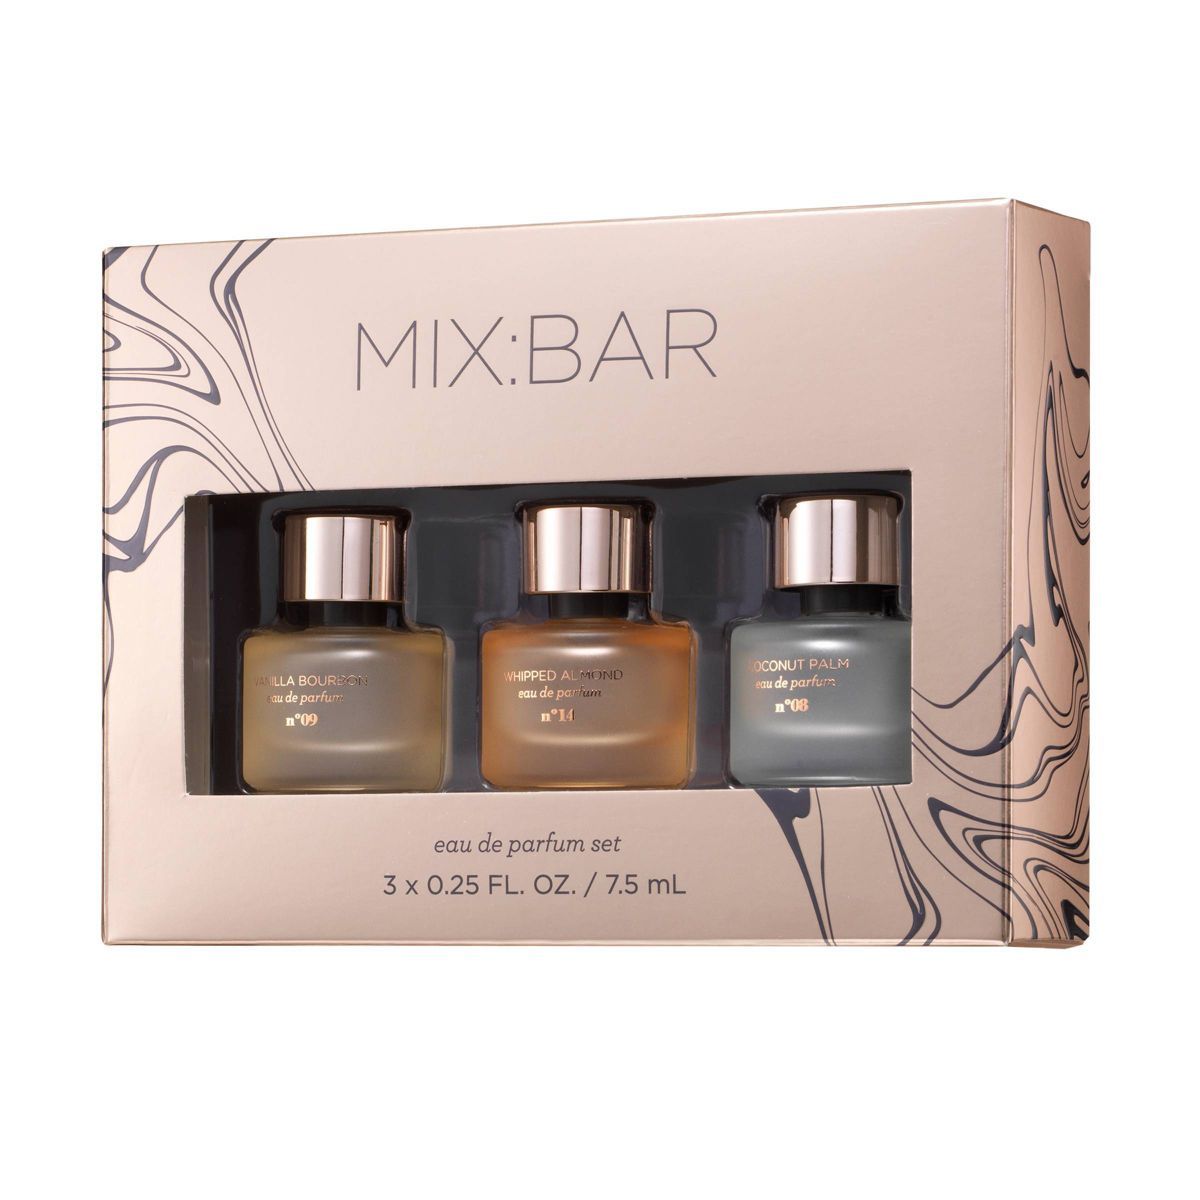 MIX:BAR Mini EDP Perfume Gift Set - 0.75 fl oz/3pc | Target